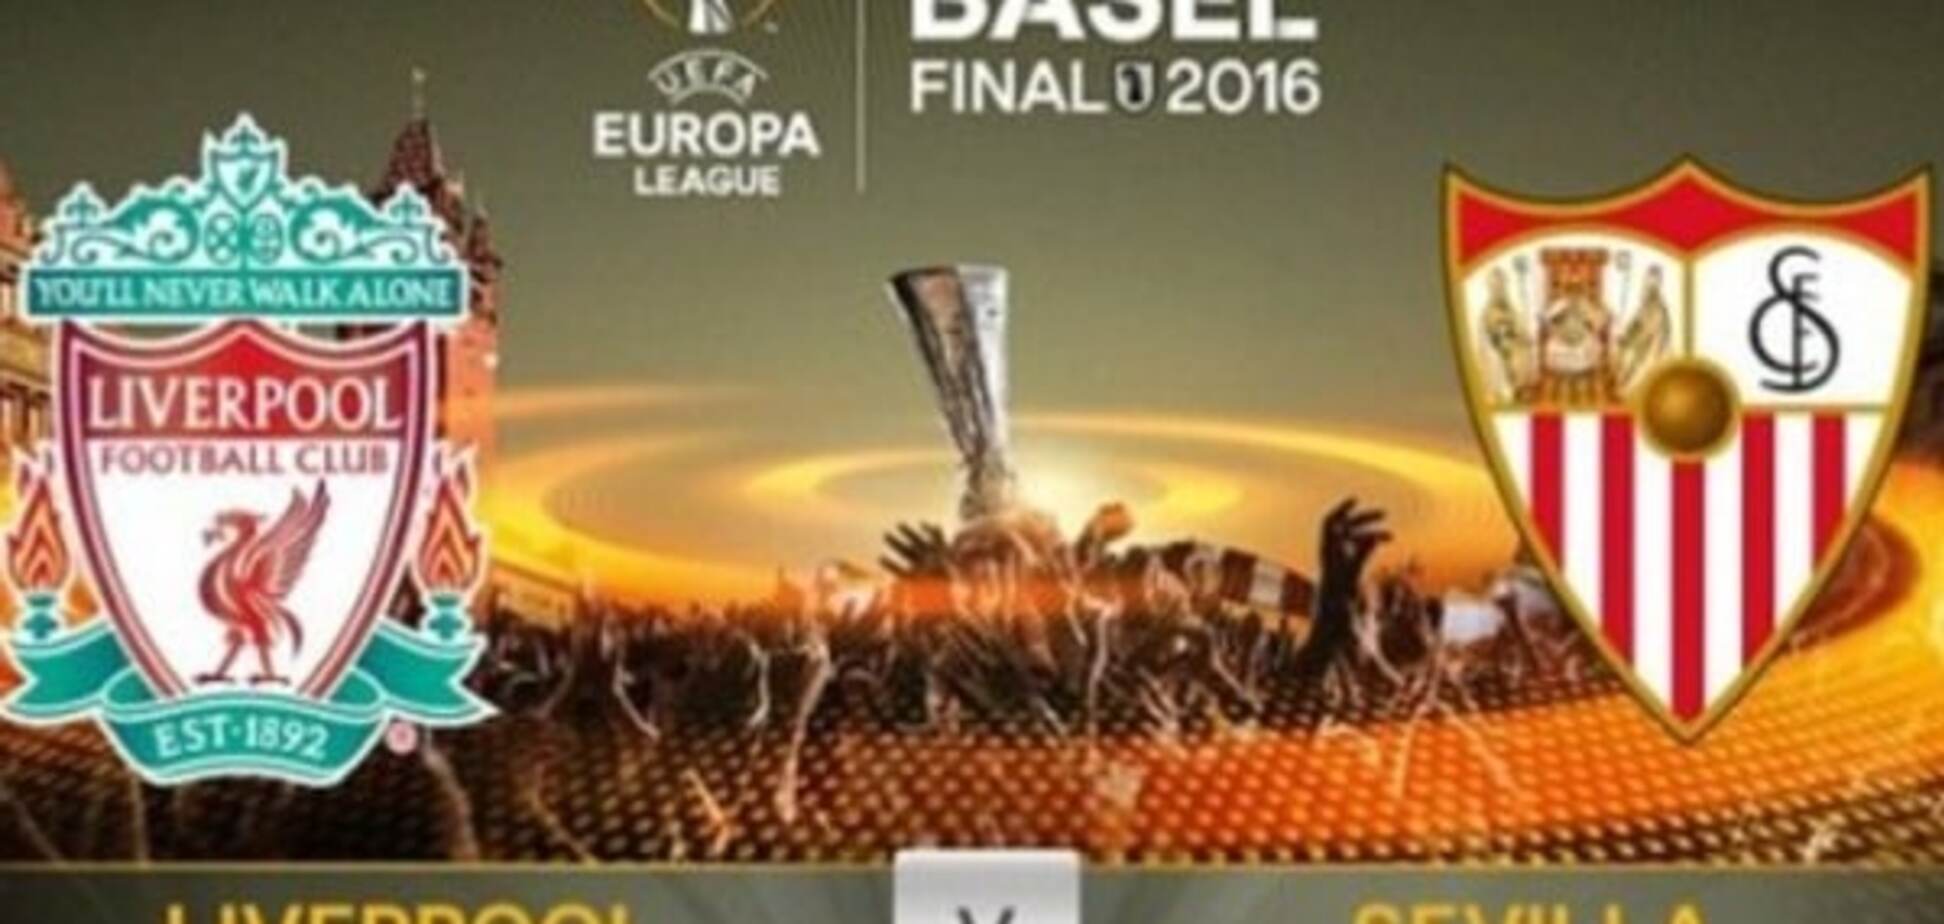 'Ливерпуль' - 'Севилья': прогноз букмекеров на финал Лиги Европы